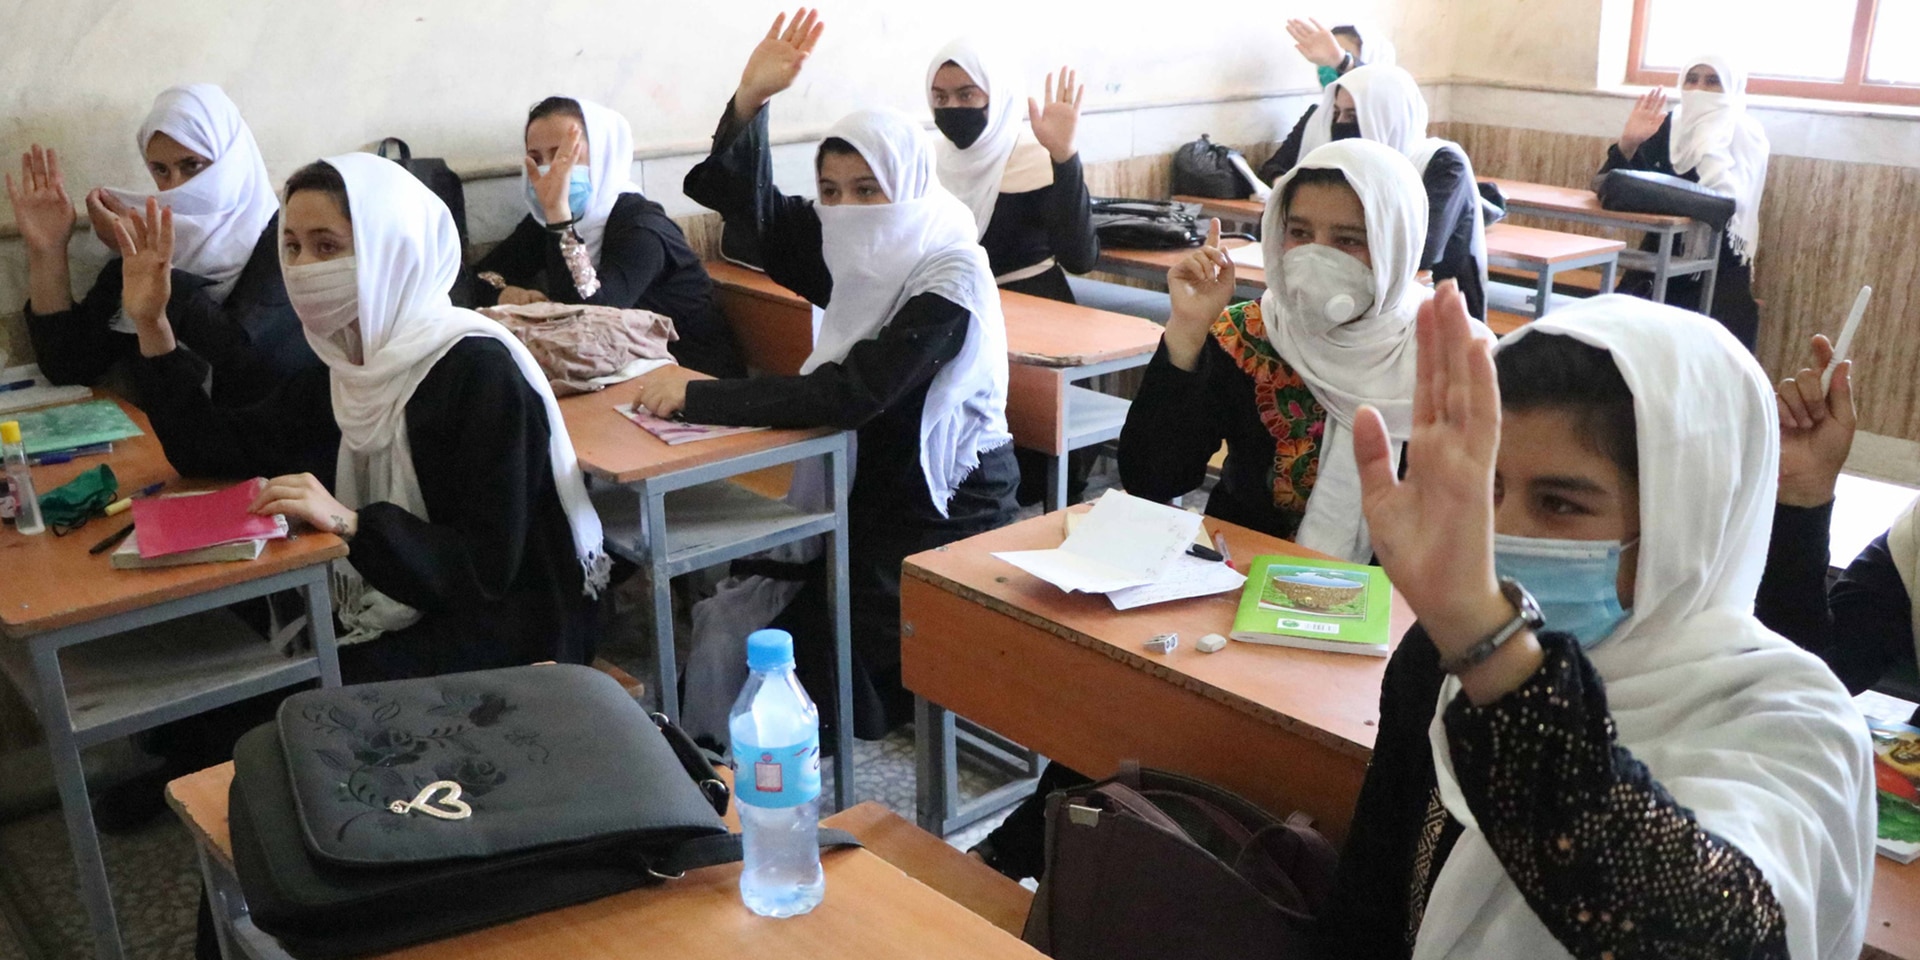 Le studentesse di una classe in Afghanistan alzano la mano per dare una risposta. 